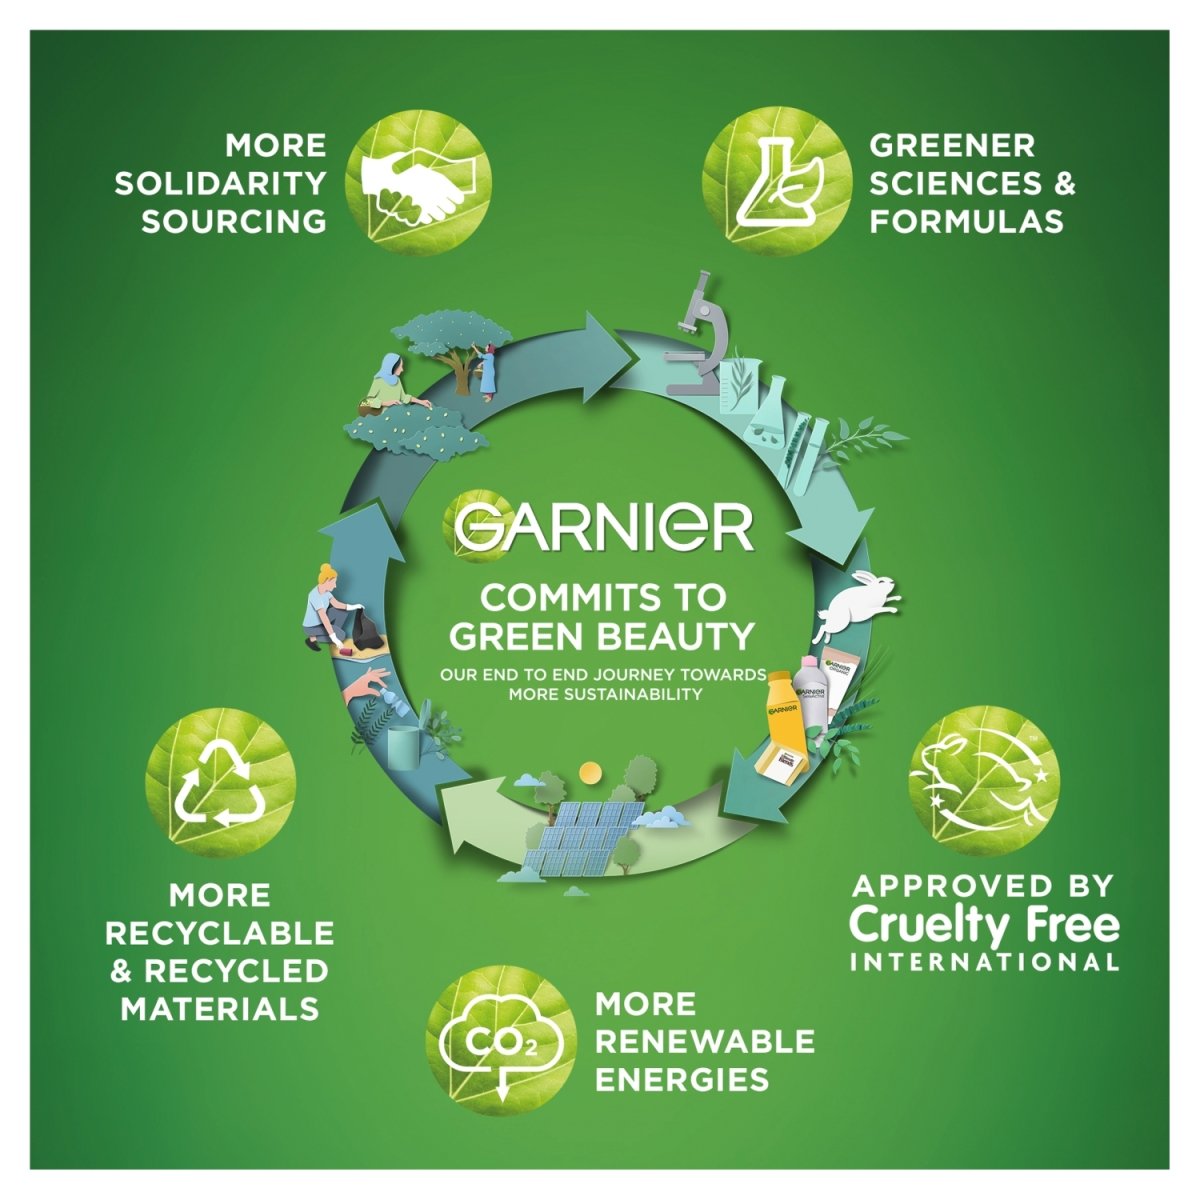 Garnier Micellar Cleansing Gel Wash Sensitive - Intamarque 3600542011044